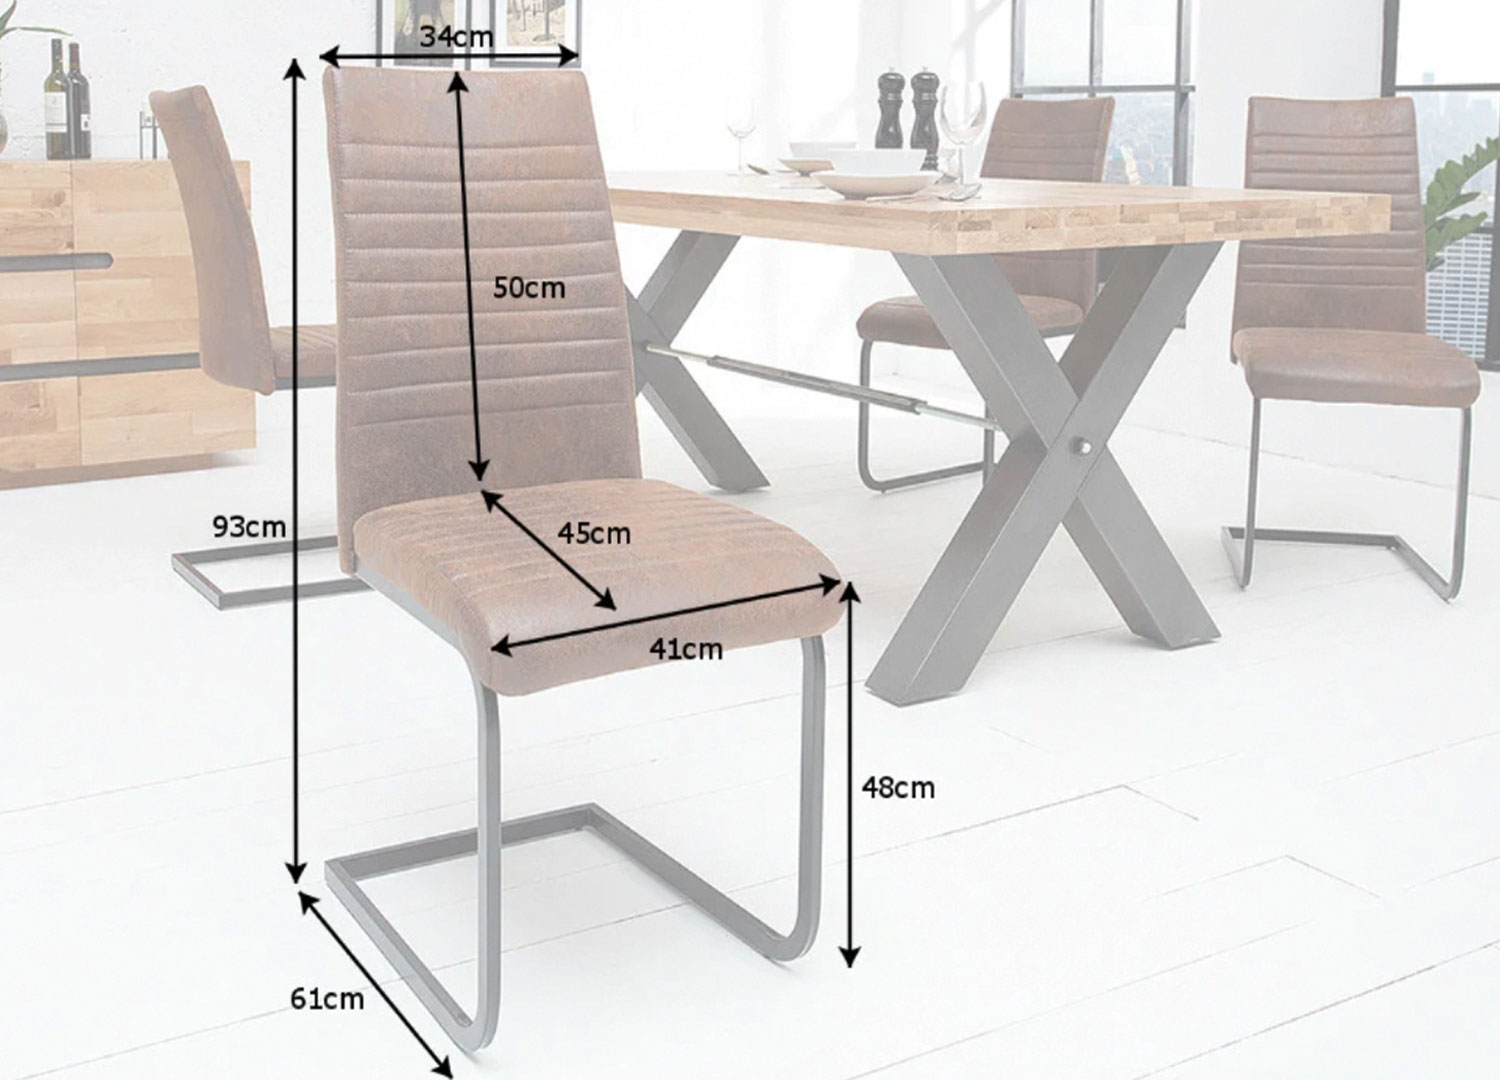 détail des dimensions des chaises